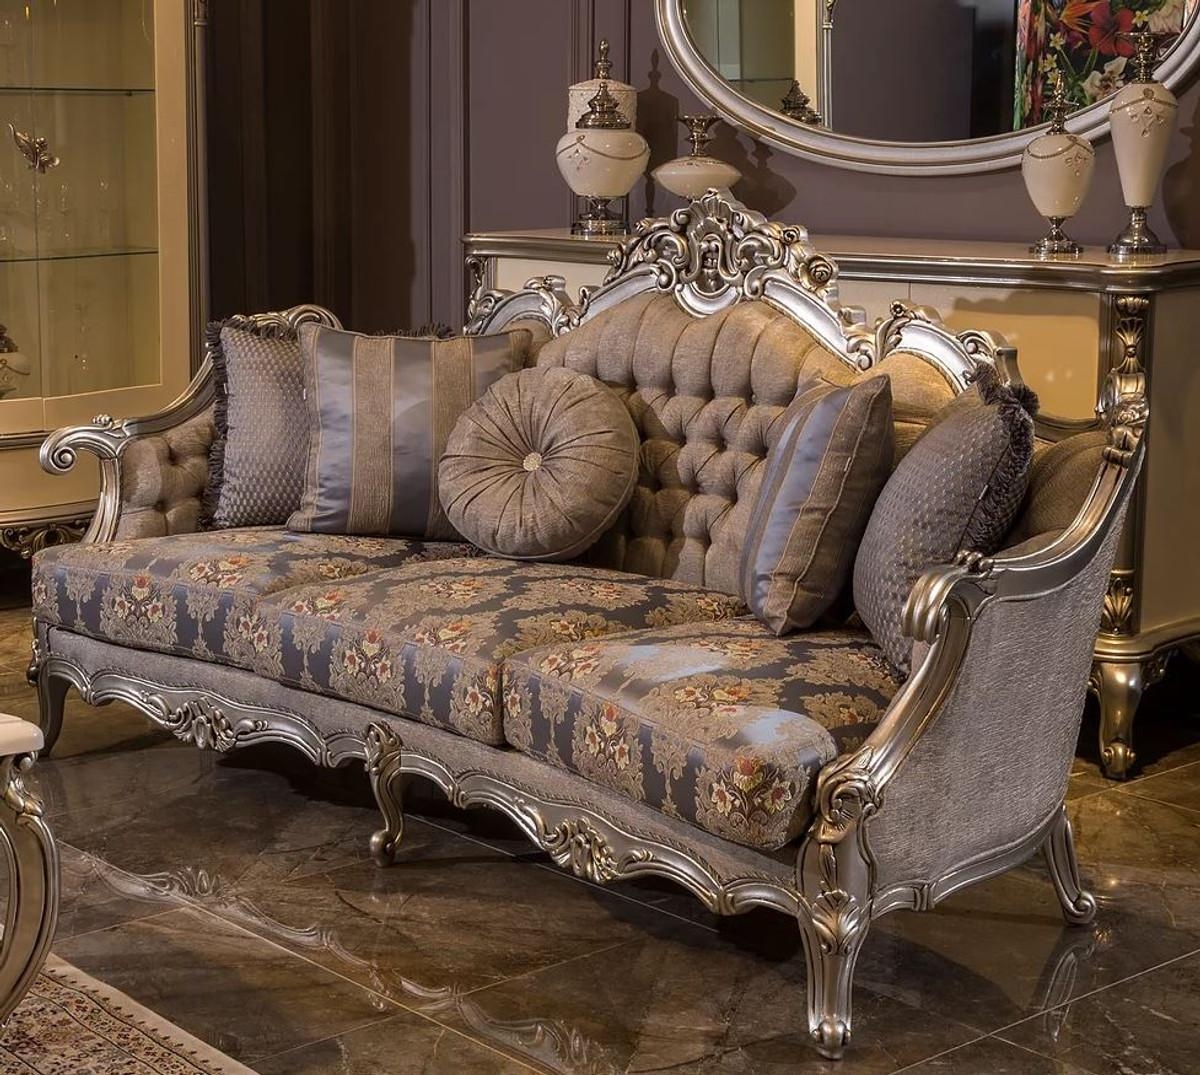 Prachtvolles Barock Sofa mit handgeschnitzten Ornamenten von Casa Padrino #barocksofa #barock #barockmöbel #luxus